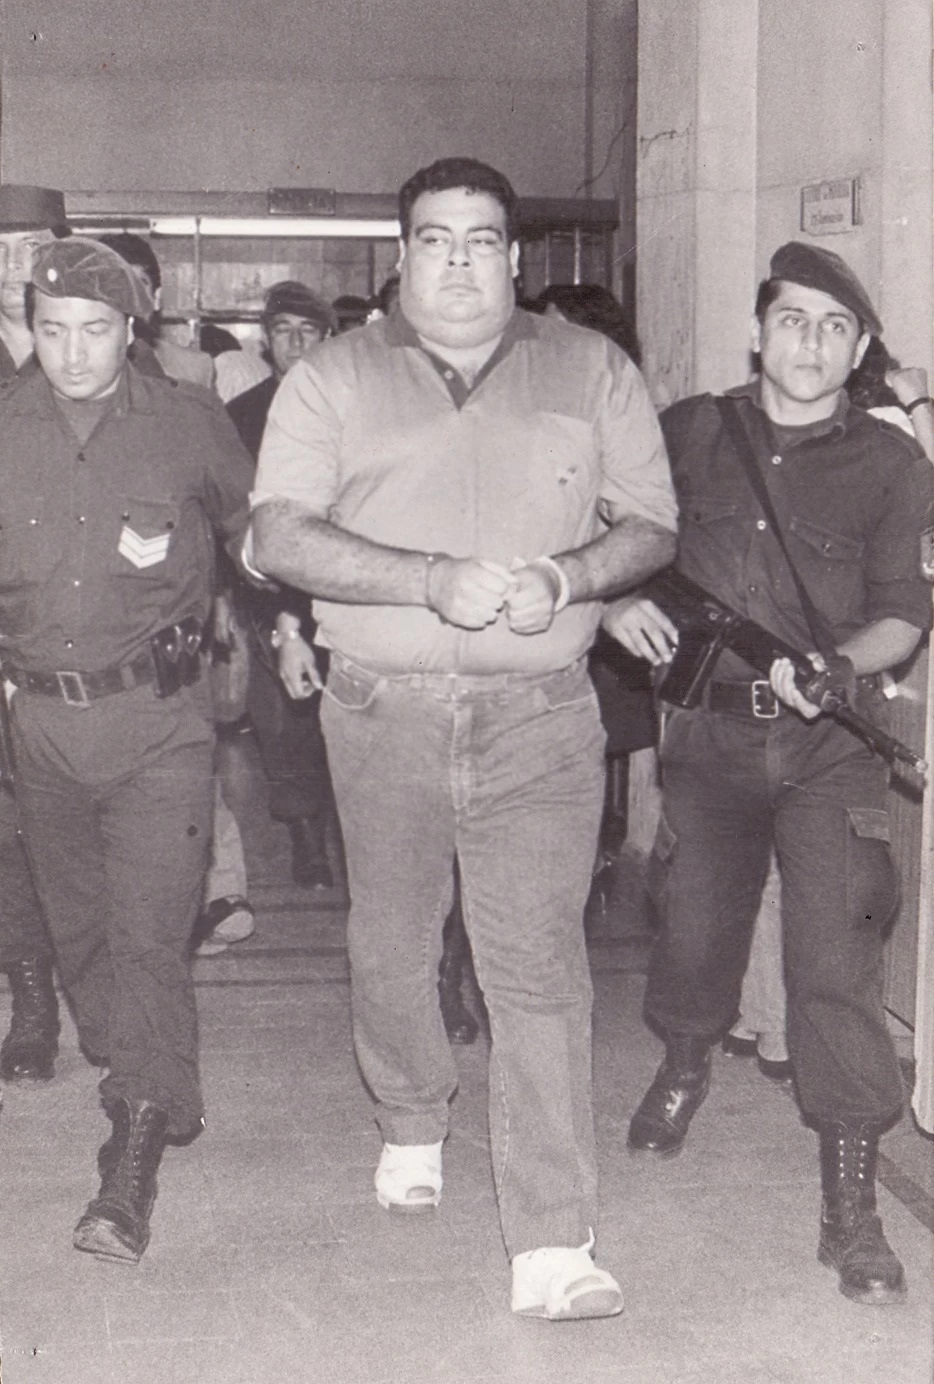 POR TRIBUNALES. Rubén “La Chancha” Ale después de haber sido detenido por el caso del homicidio del oficial Salinas.